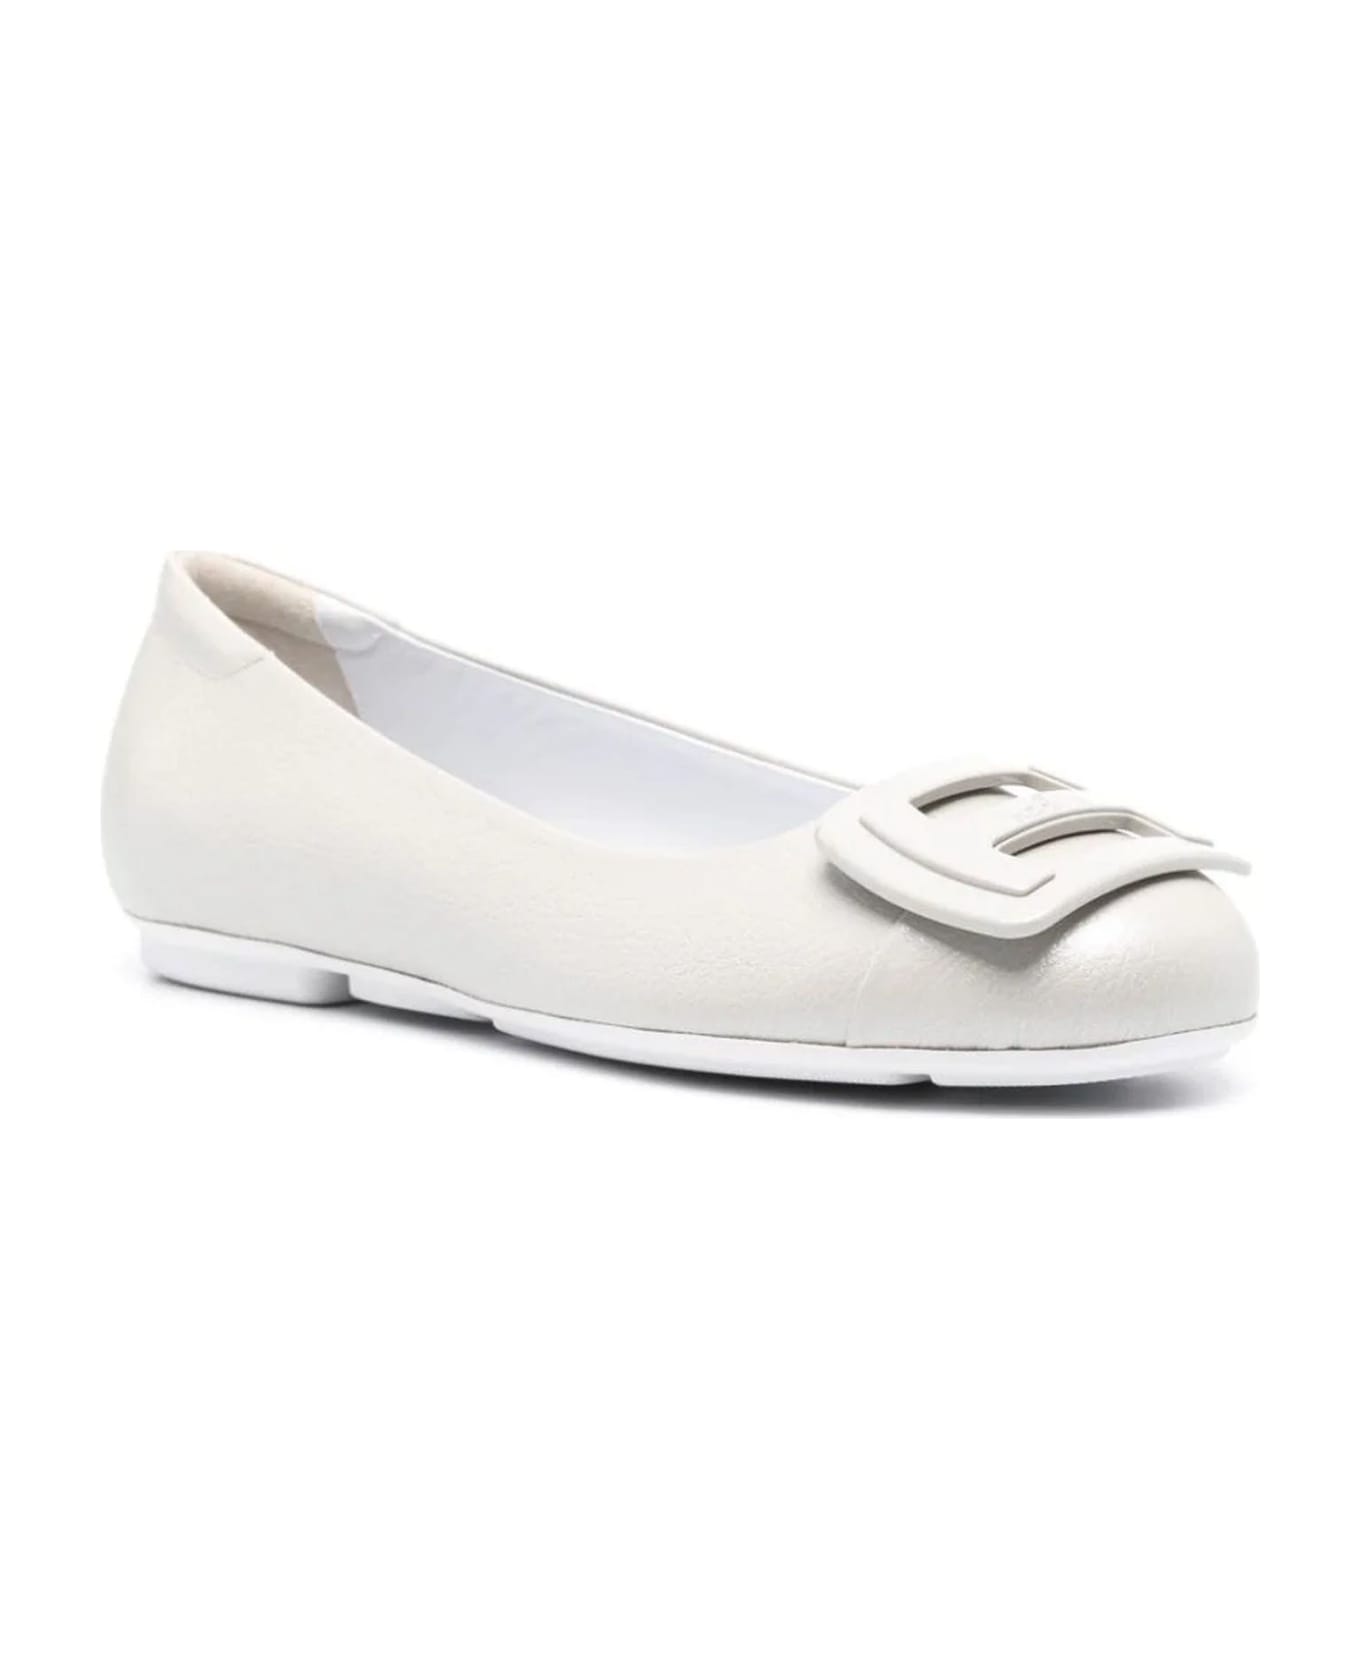 Hogan H661 Ballerina Shoes - Grey